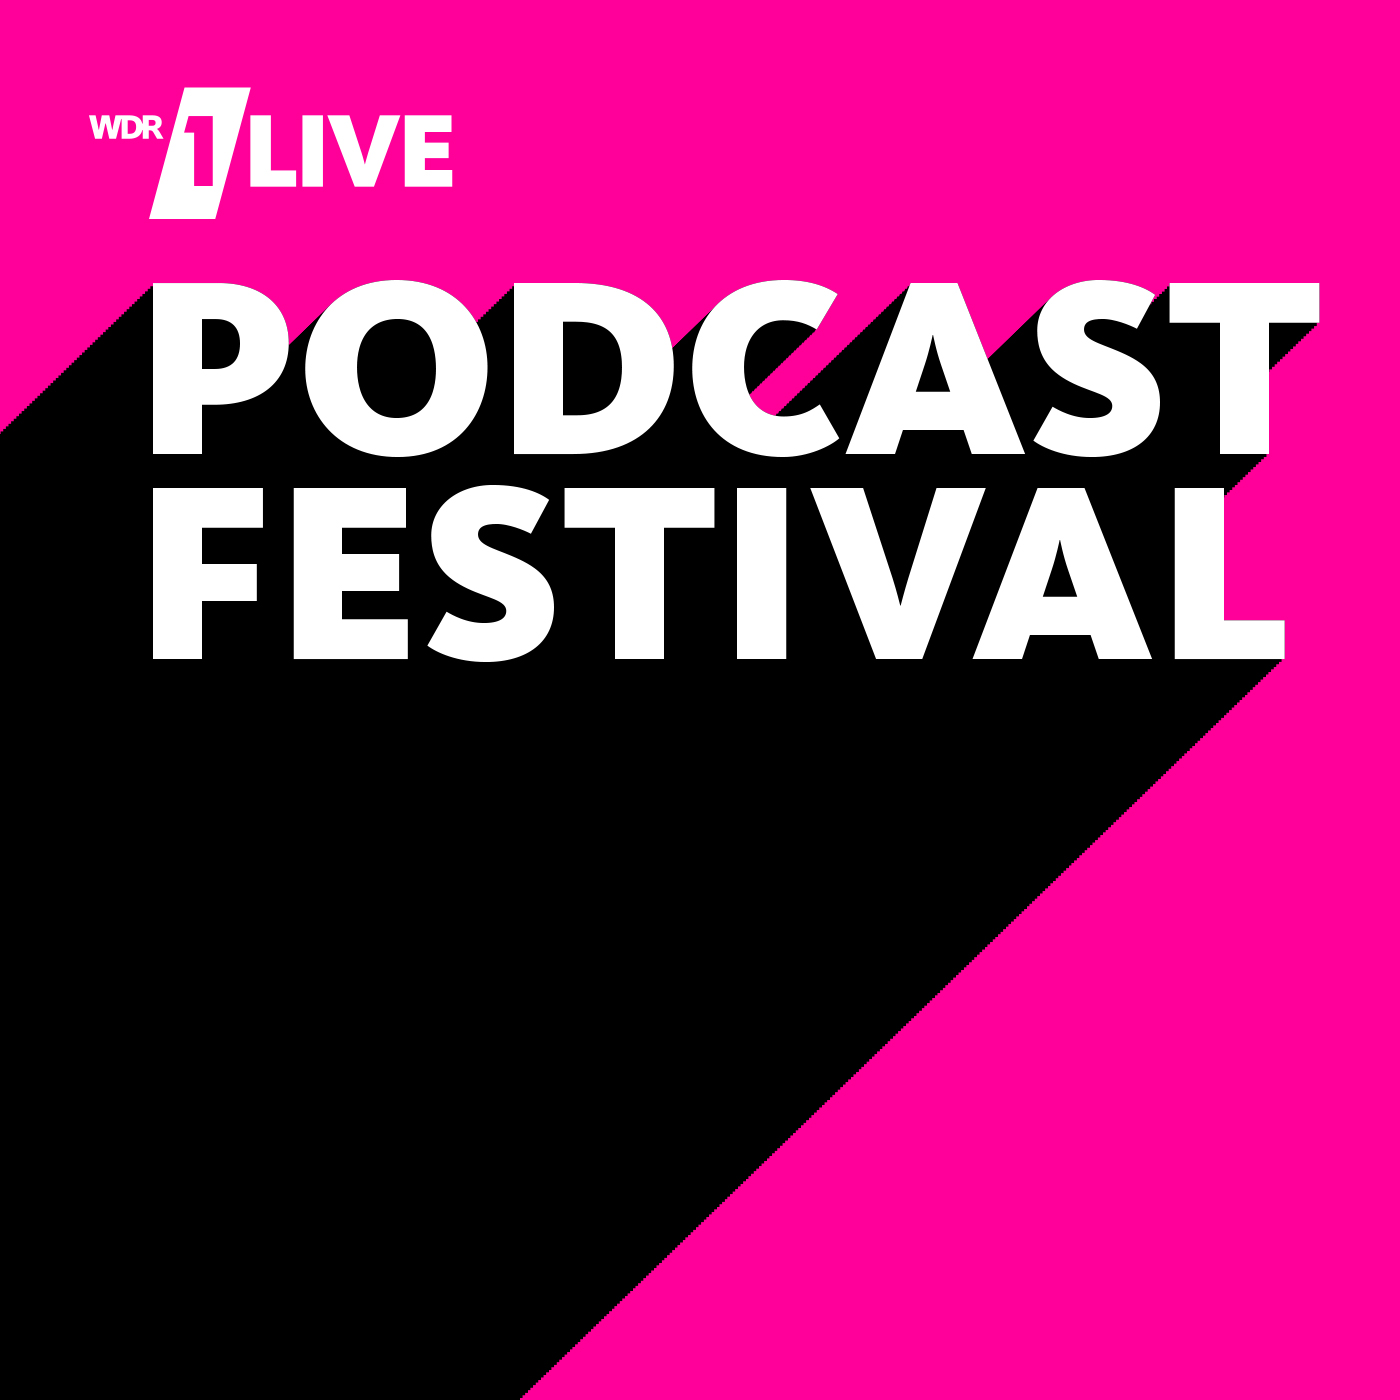 1LIVE Podcastfestival